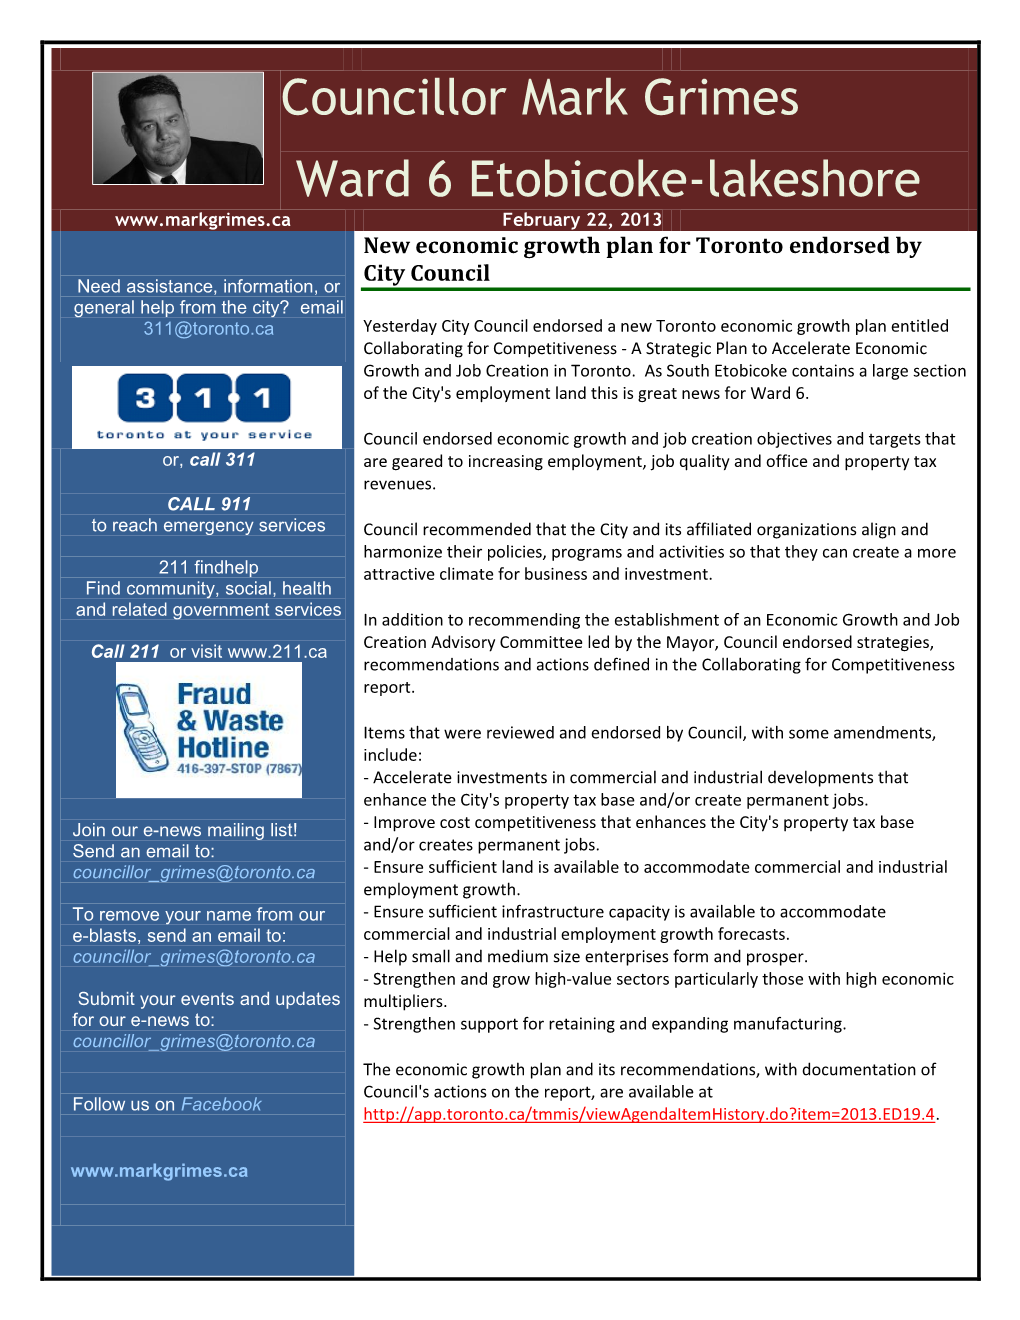 Councillor Mark Grimes Ward 6 Etobicoke-Lakeshore